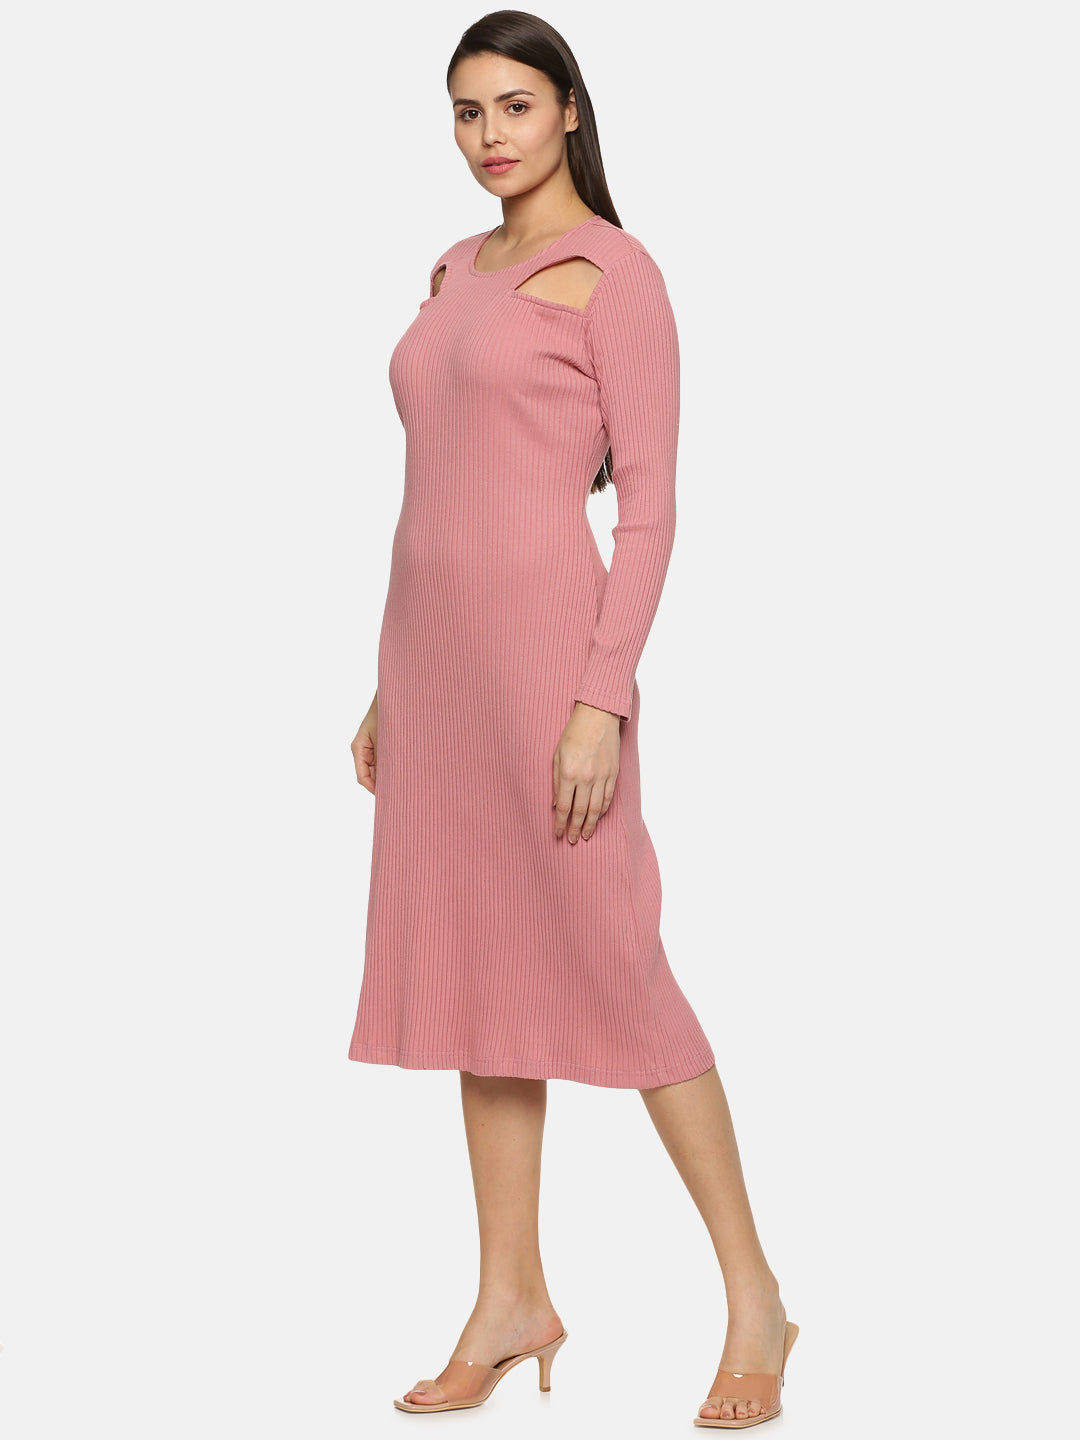 Modern Mauve Cutout Midaxi Knit Dress For Women